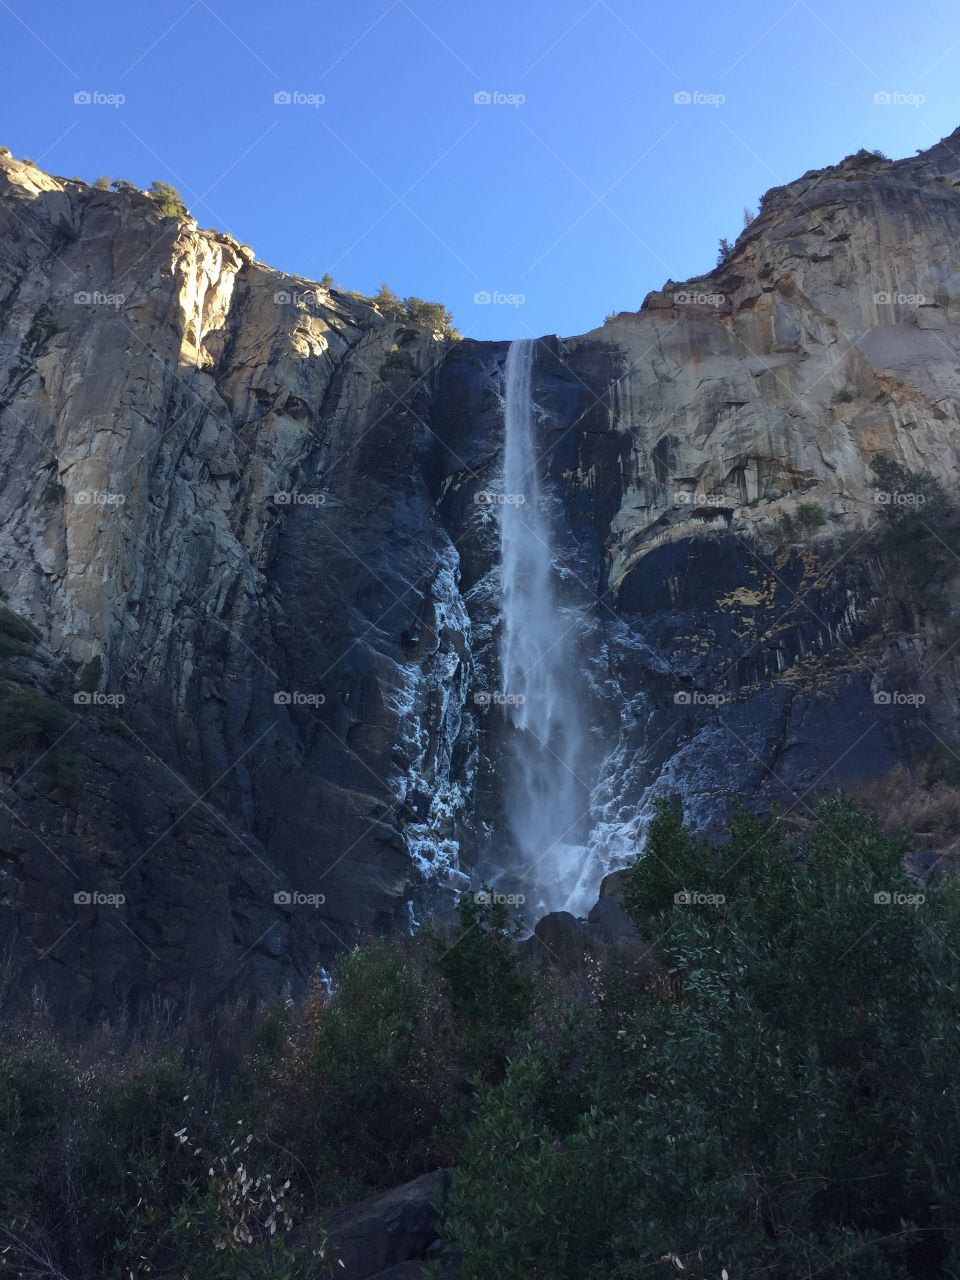 Bridalveil falls